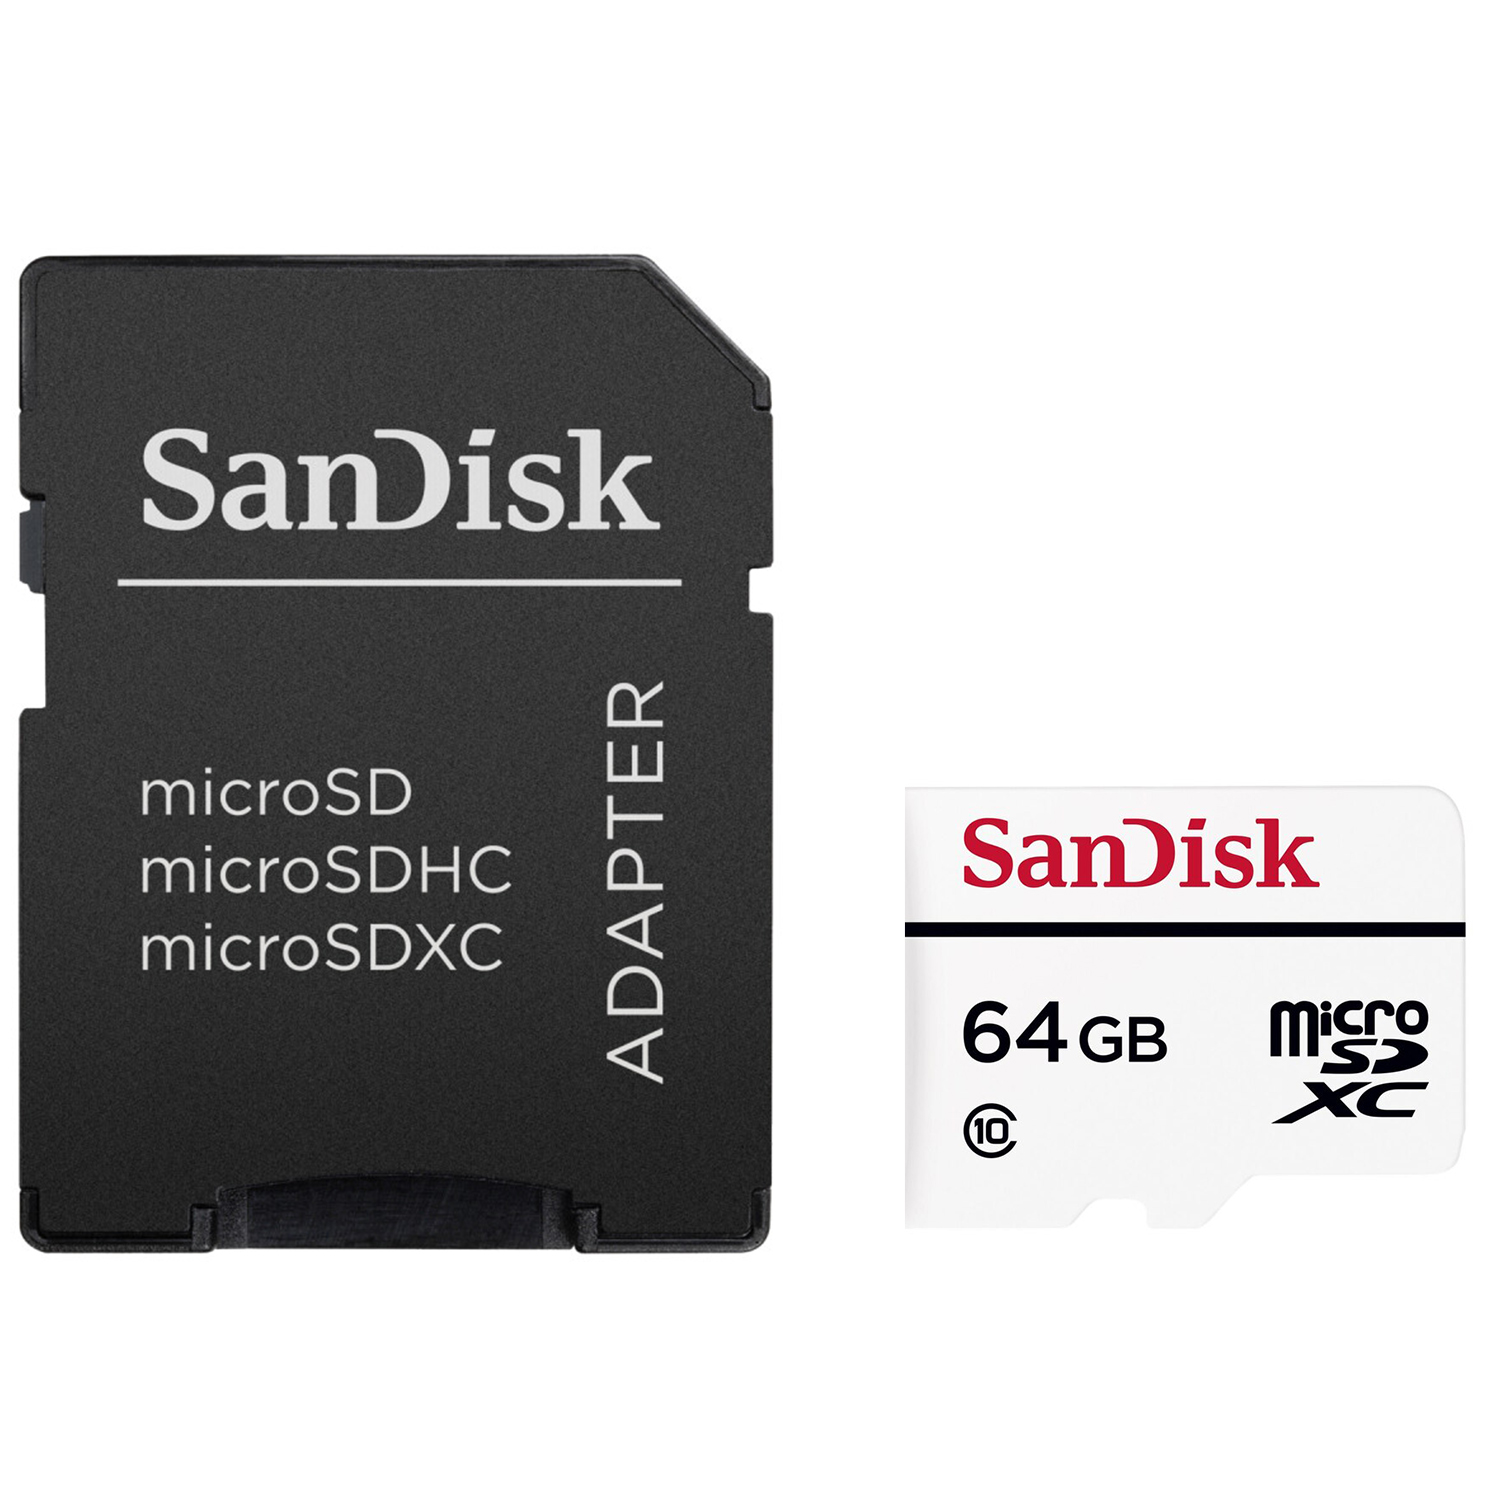 کارت حافظه microSDXC سن دیسک کلاس 10 استاندارد UHS-I U1 سرعت 20MBps ظرفیت 64 گیگابایت به همراه آداپتور SD